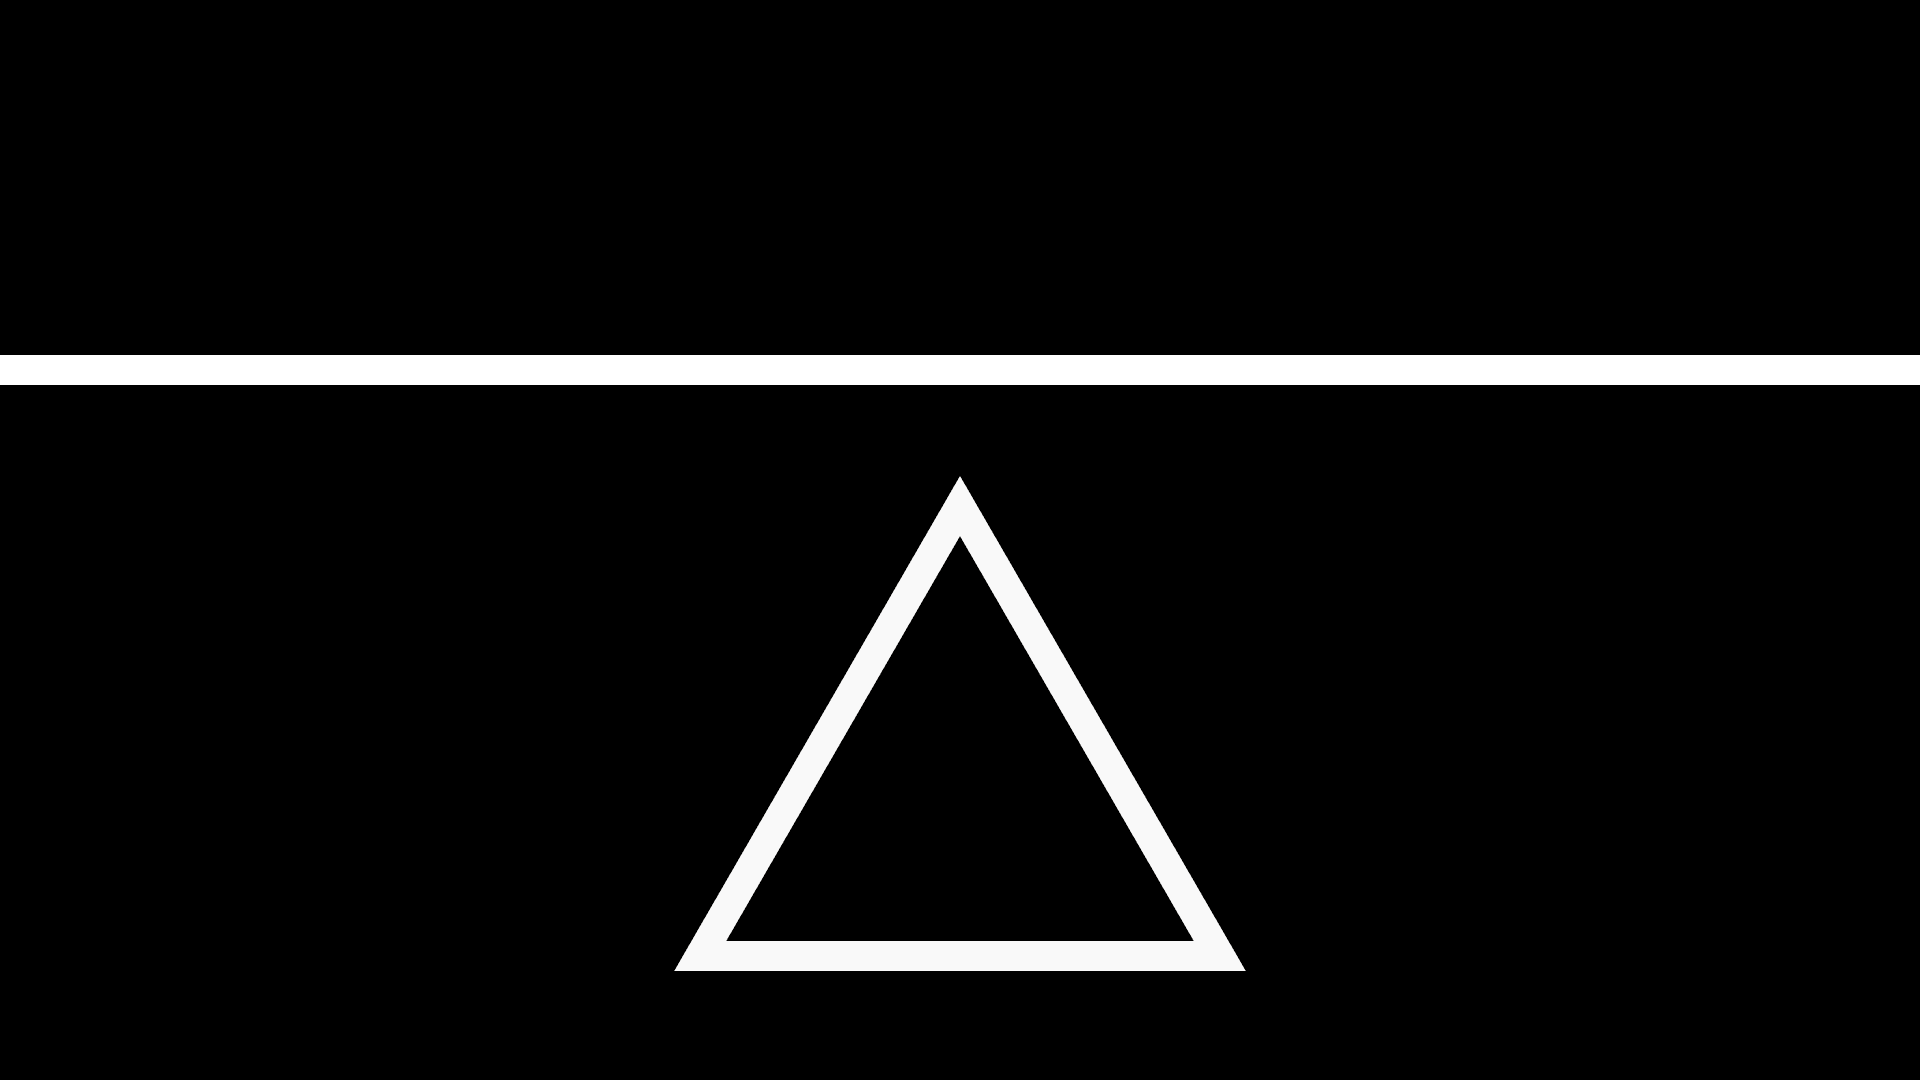 Gif wallpaper. Треугольник на черном фоне. Белый треугольник на черном фоне. Минимализм треугольник. Красивые треугольники на черном фоне.